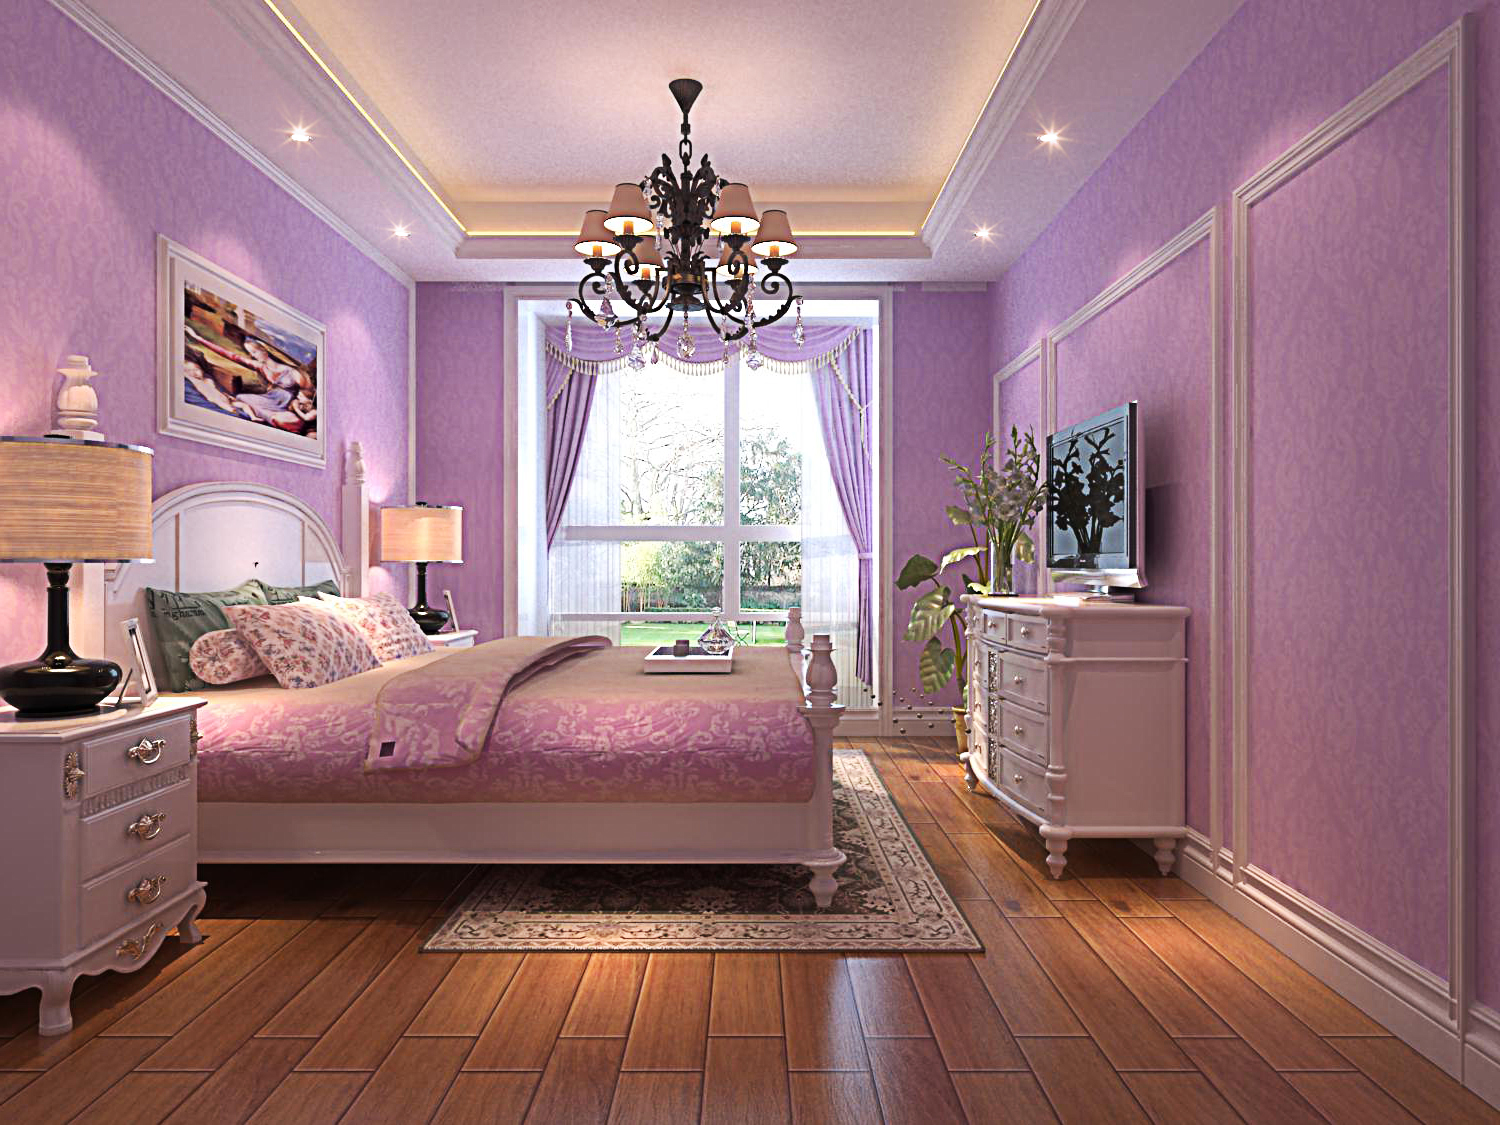 简约 欧式 混搭 别墅 卧室图片来自长沙金煌装饰在温馨浪漫简欧风格的分享